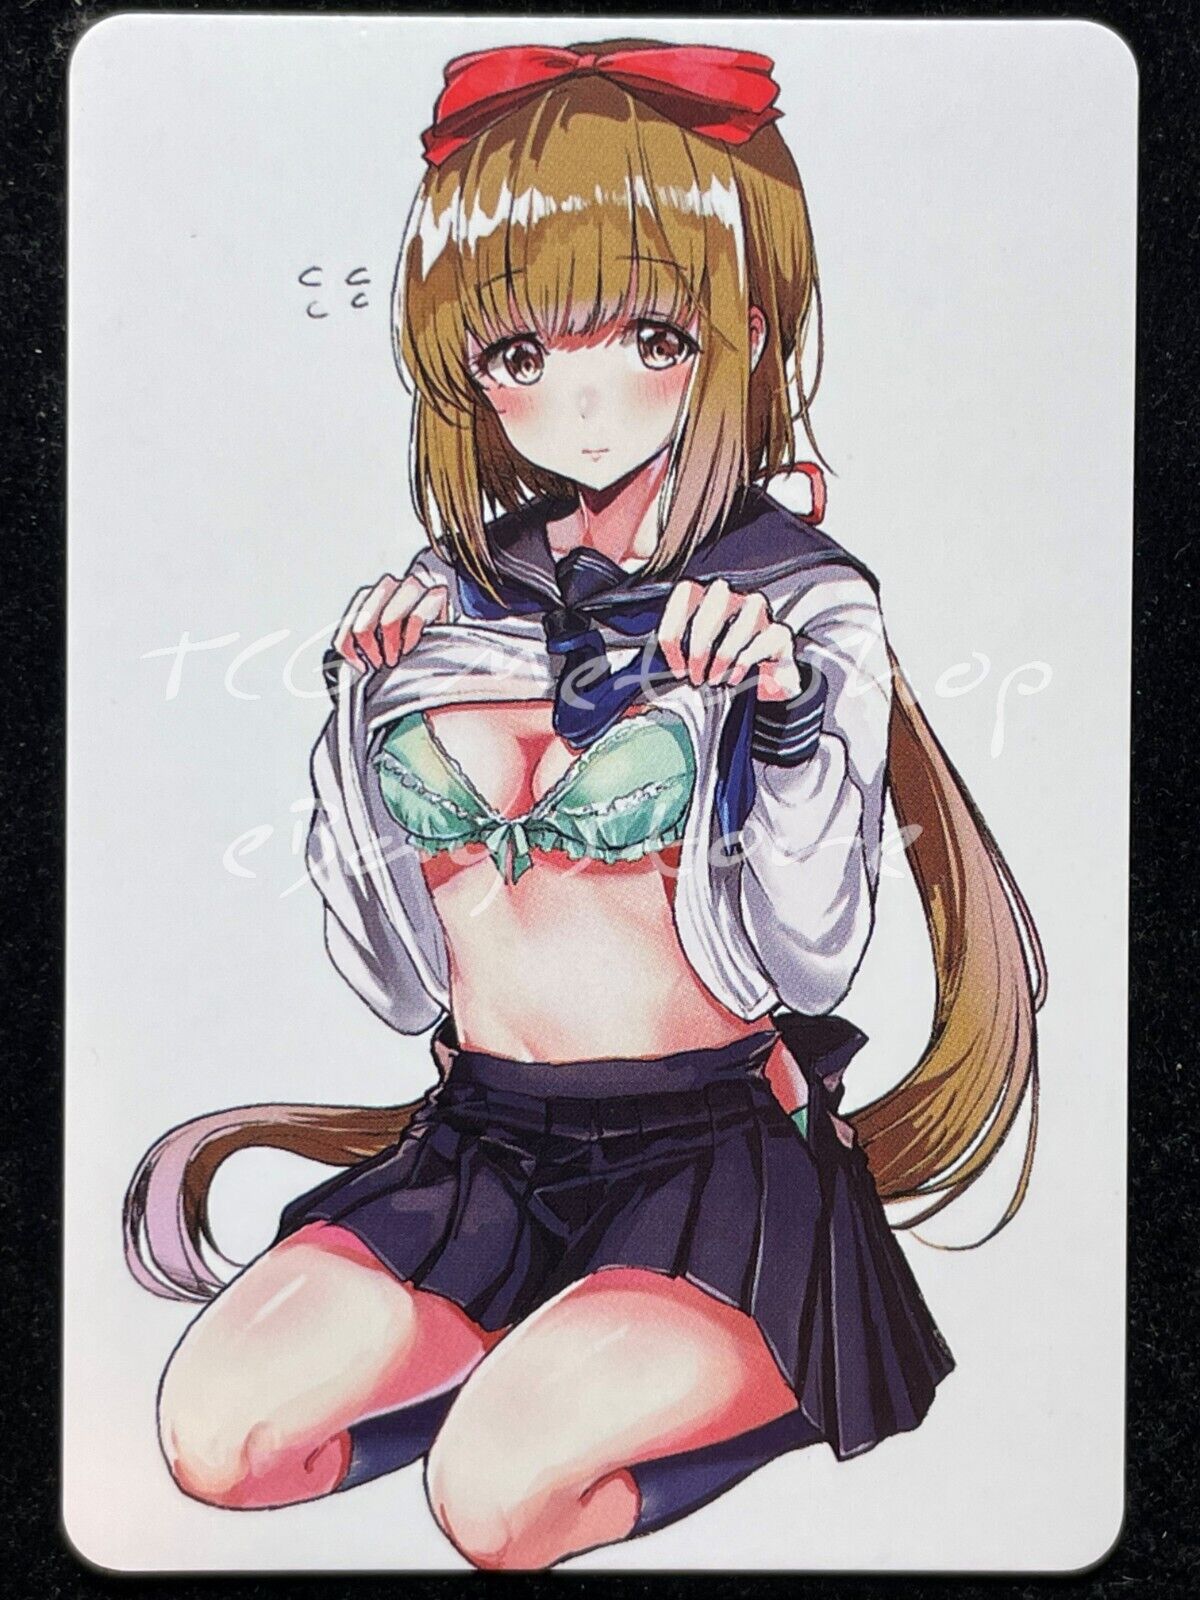 🔥 Cute Girl Goddess Story Anime Card ACG # 1509 🔥